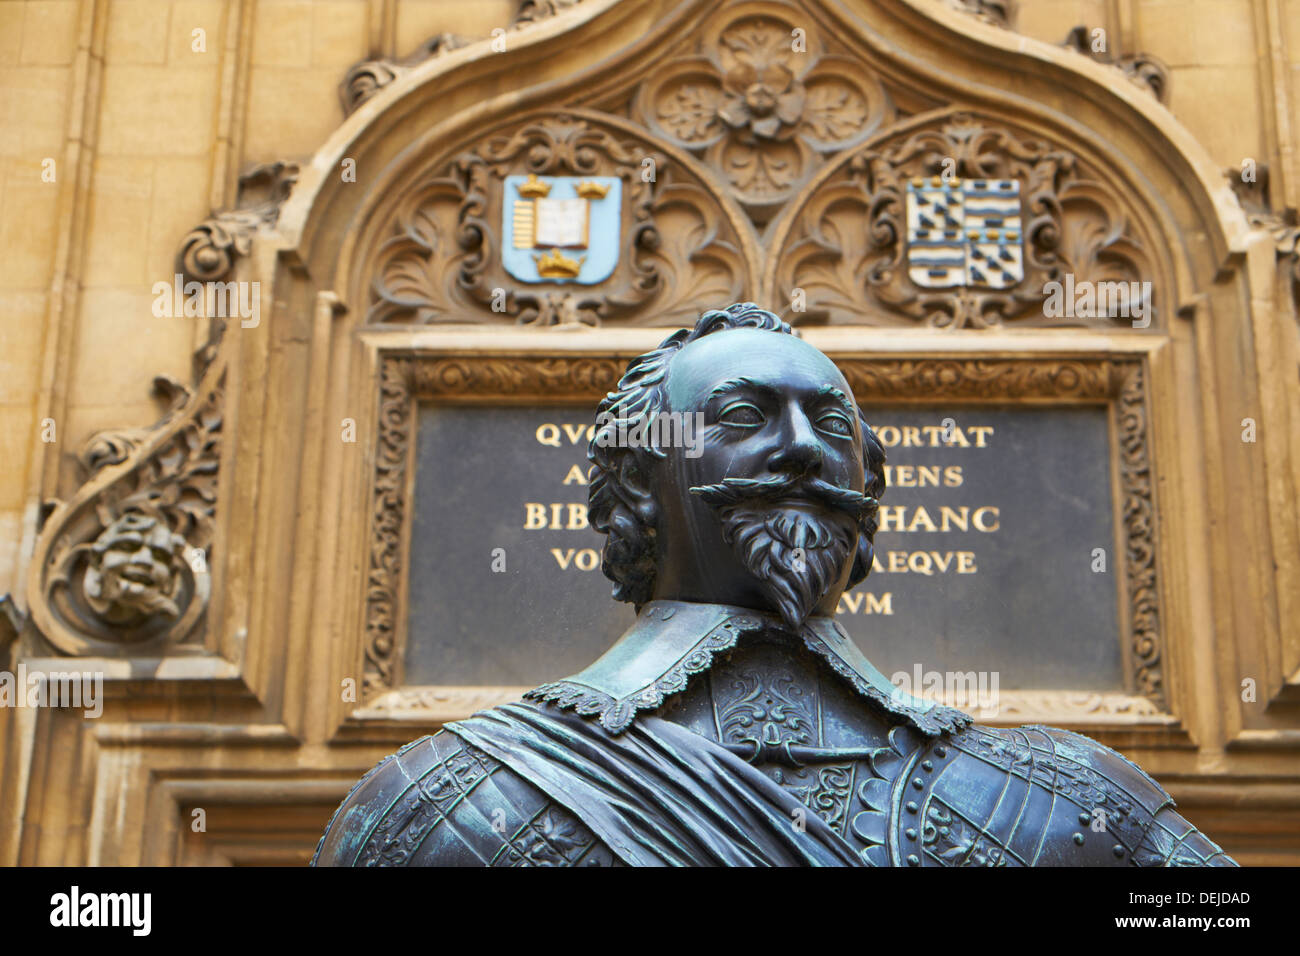 Statue de bronze du comte de Pembroke, dans le quadrangle d'écoles de la Bodleian Library de l'Université d'Oxford England UK Banque D'Images